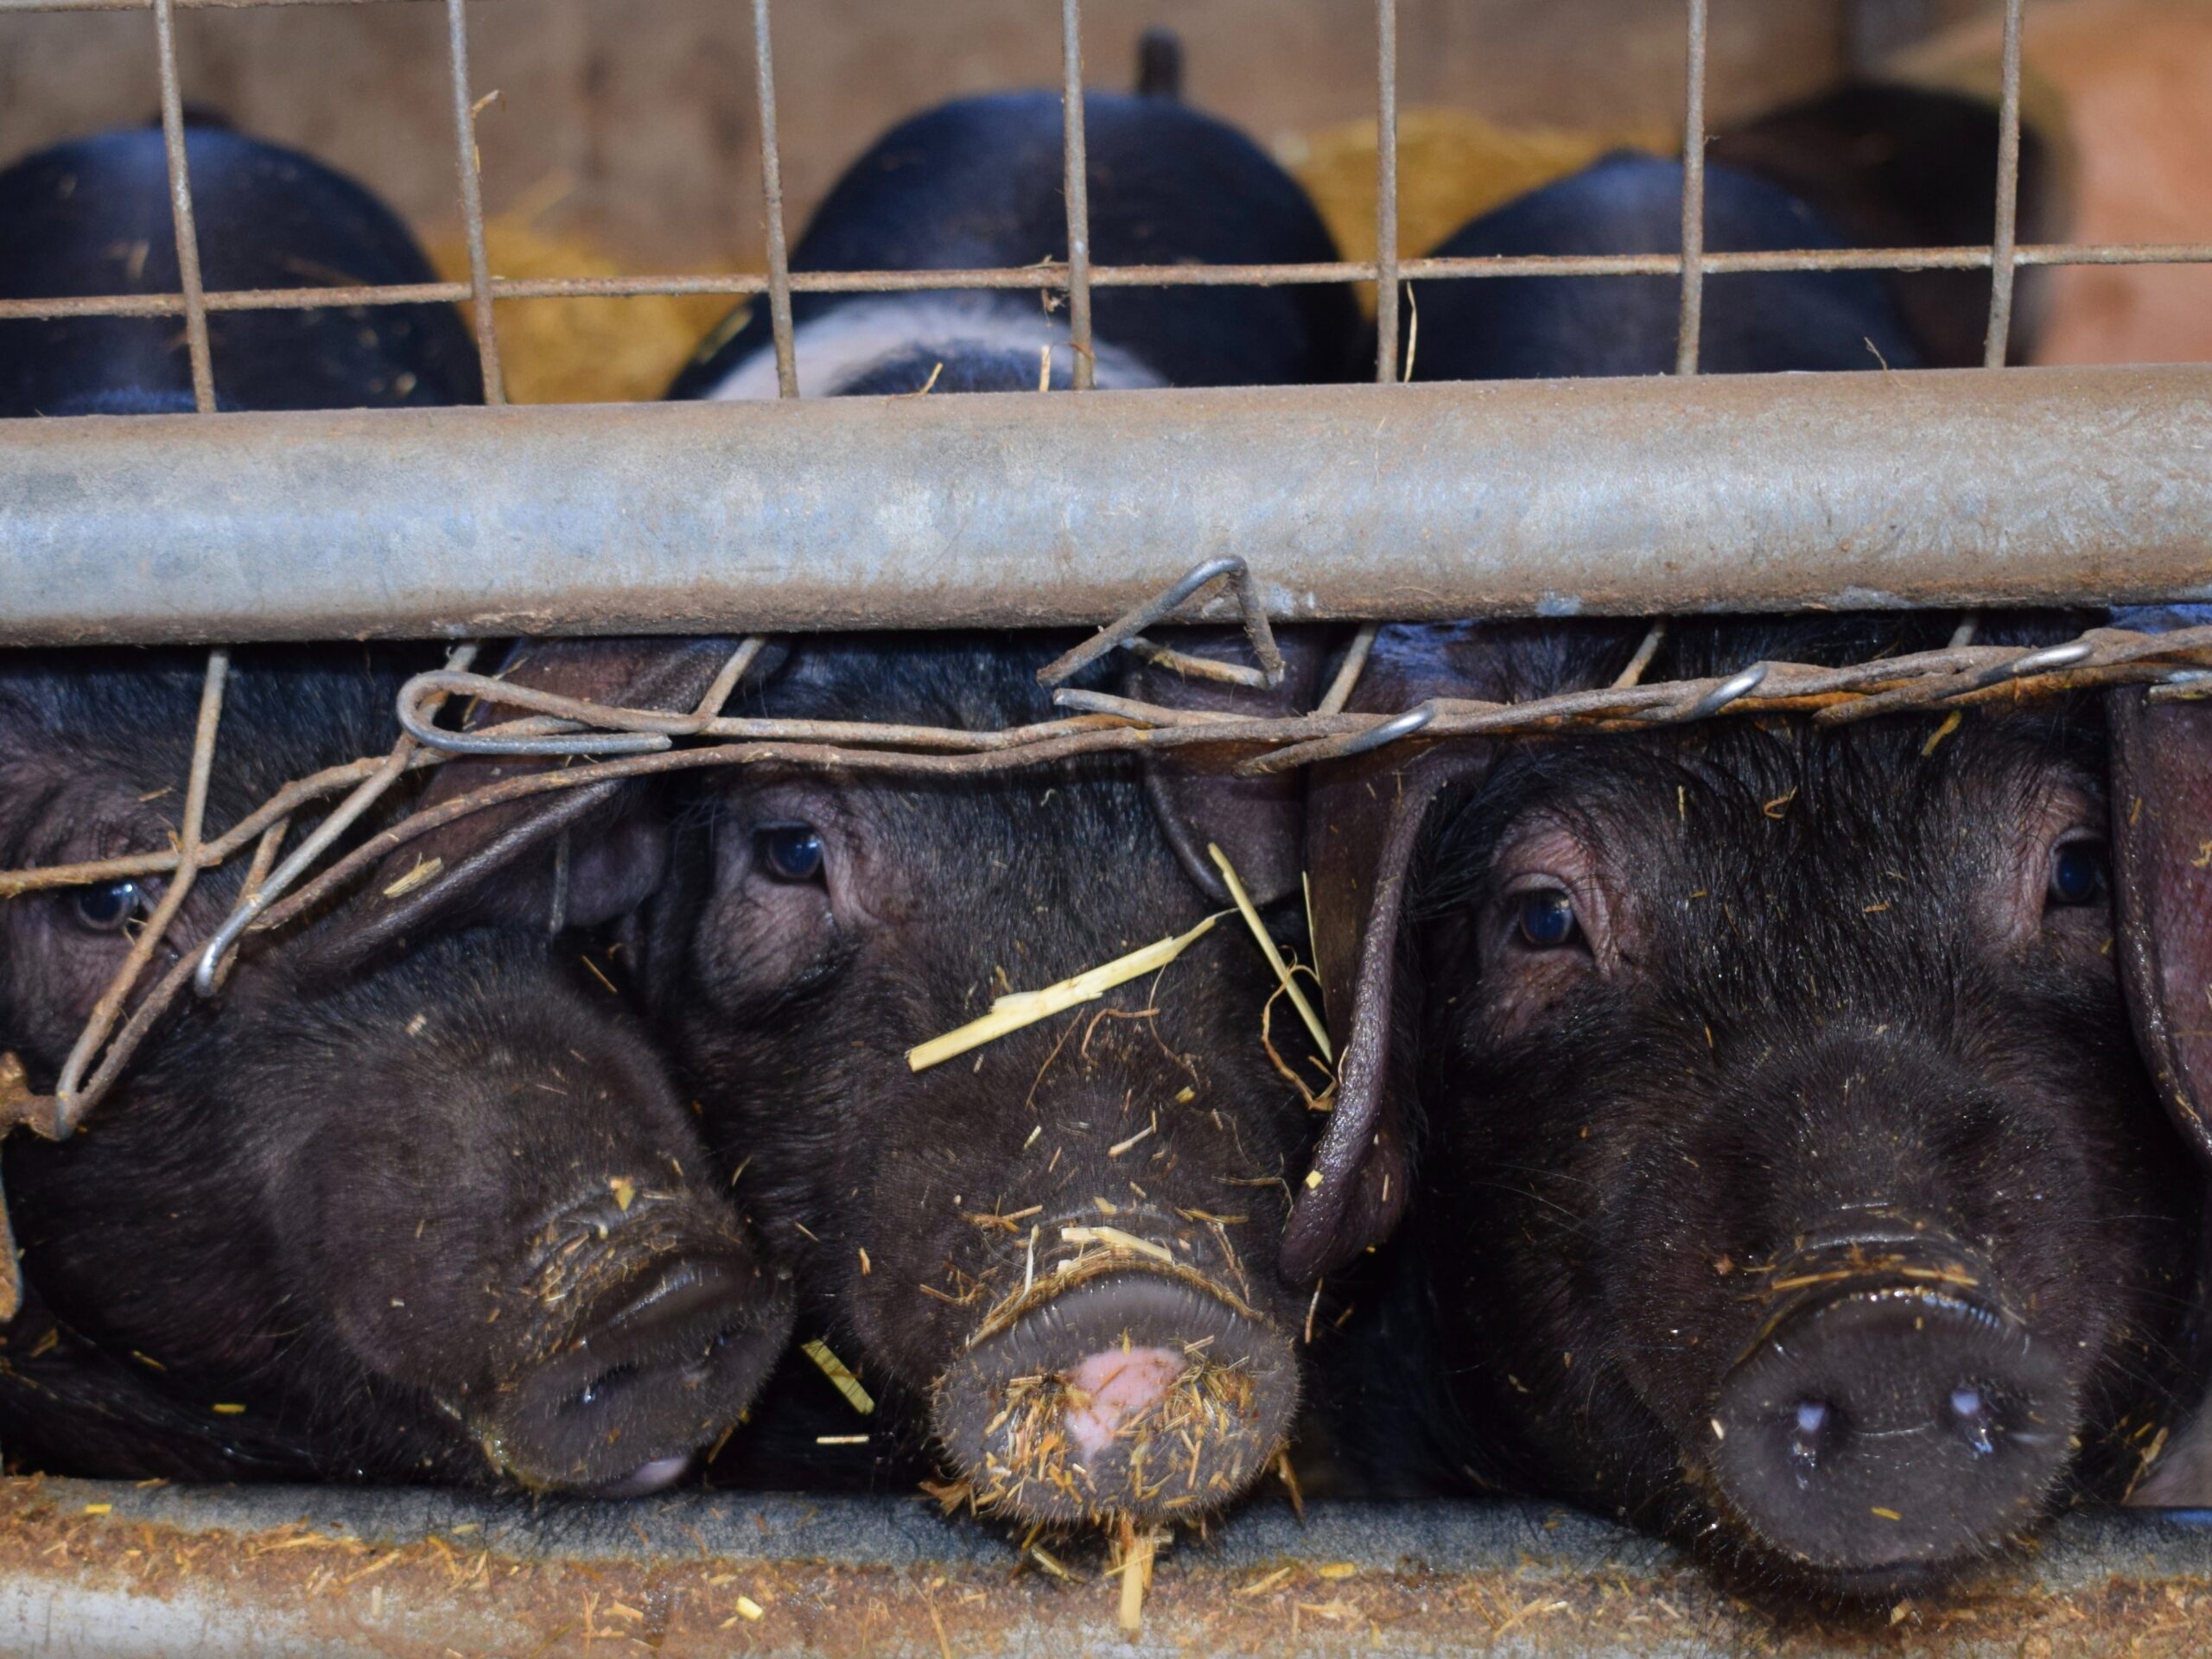 Viruses like influenza often evolve in livestock, like the pigs pictured here.